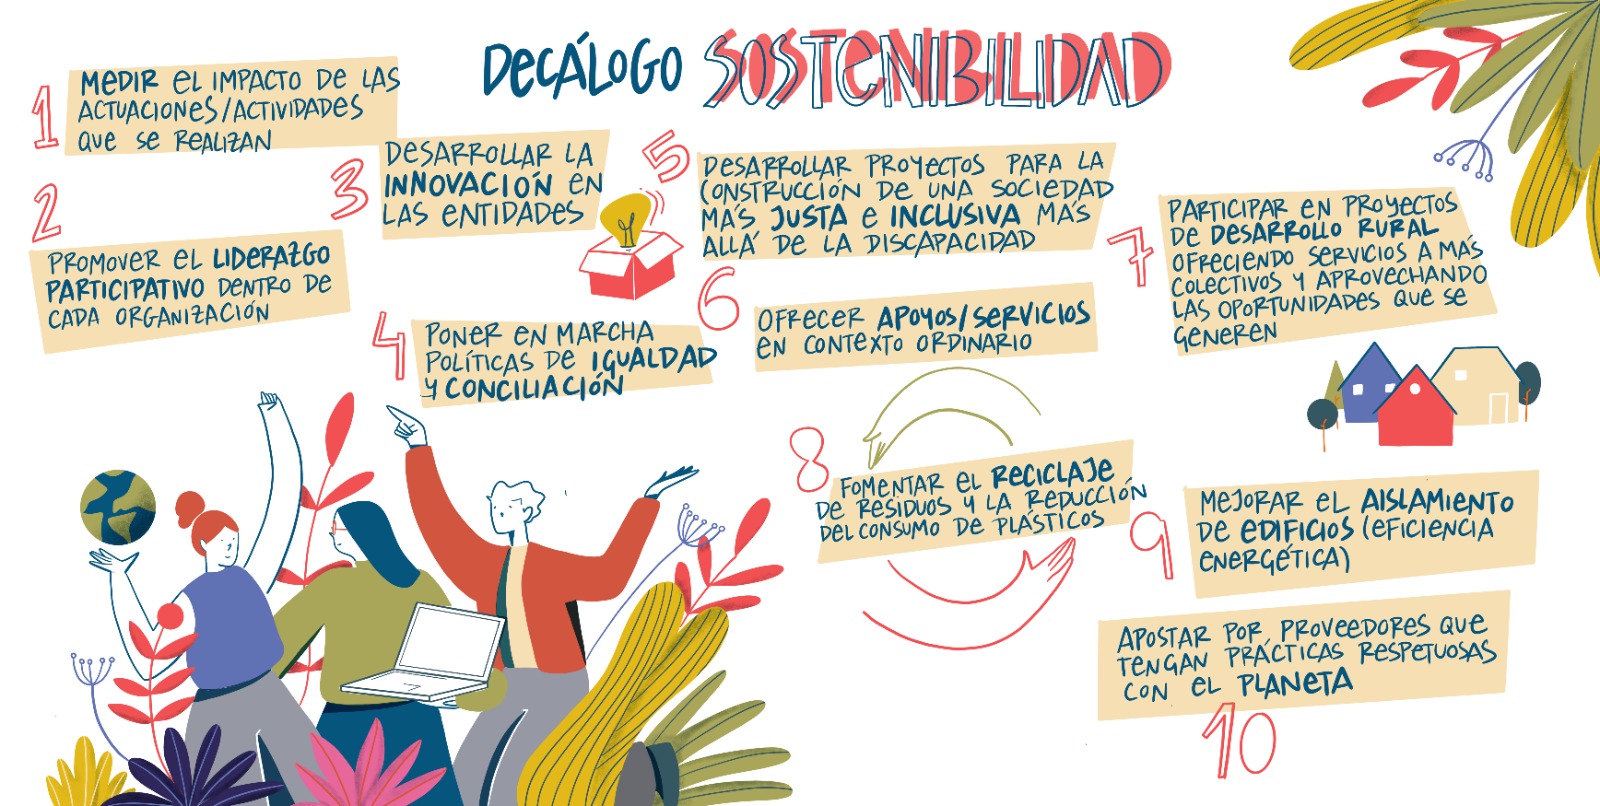 Ir a : Un decálogo sobre sostenibilidad, uno de los frutos participativos del Congreso de Valladolid